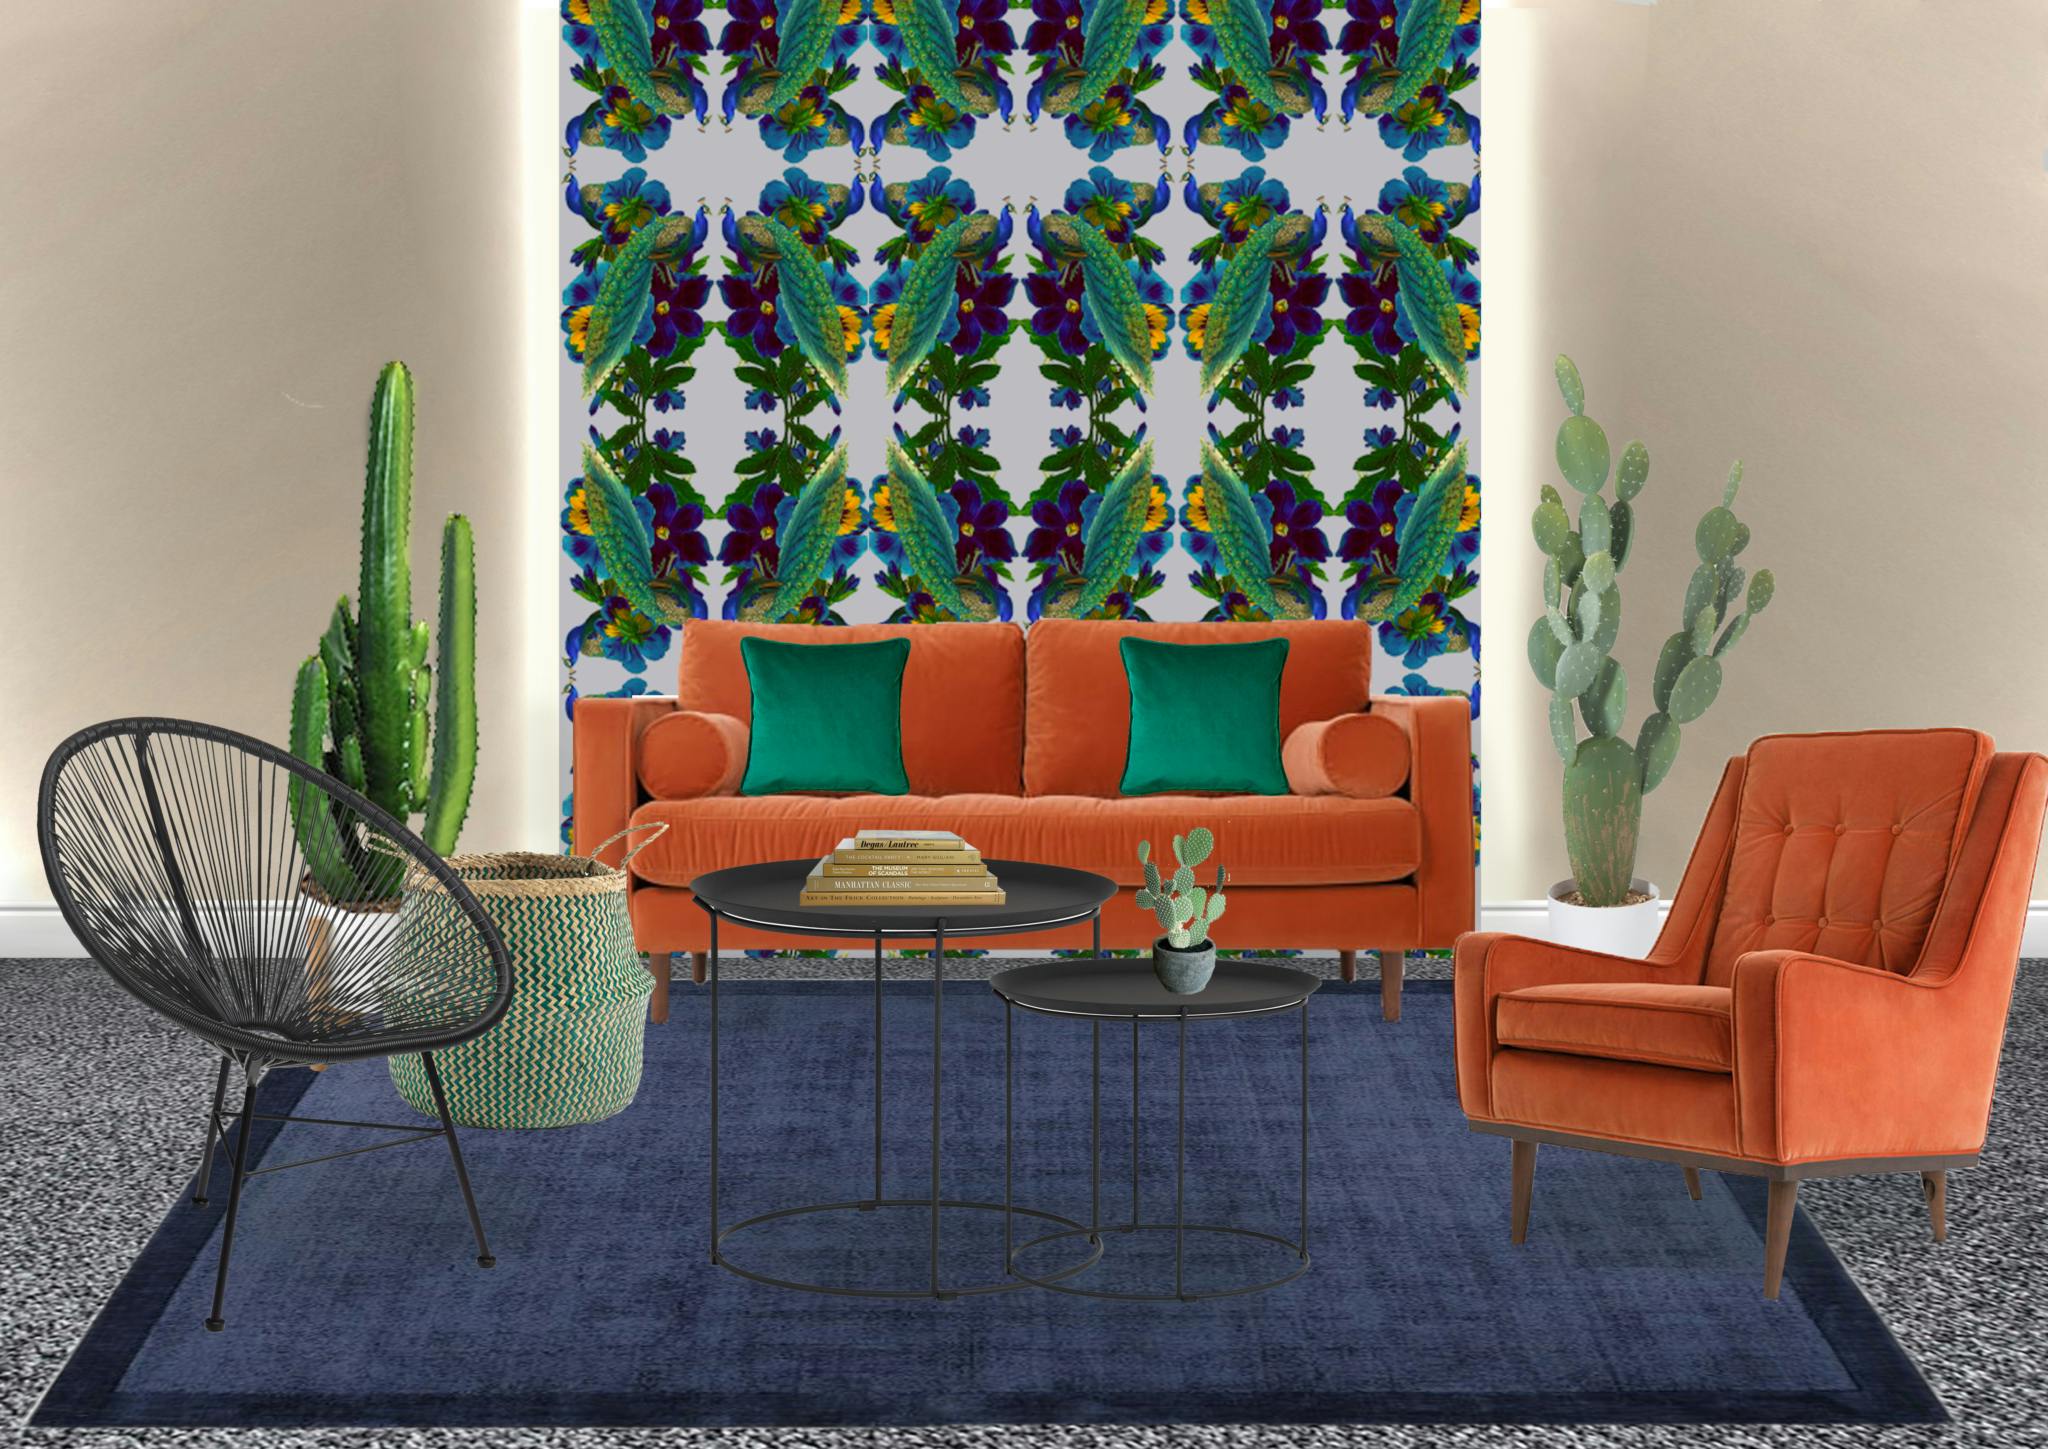 Morwenna Franks Arundel Crescent Lounge Interior Design